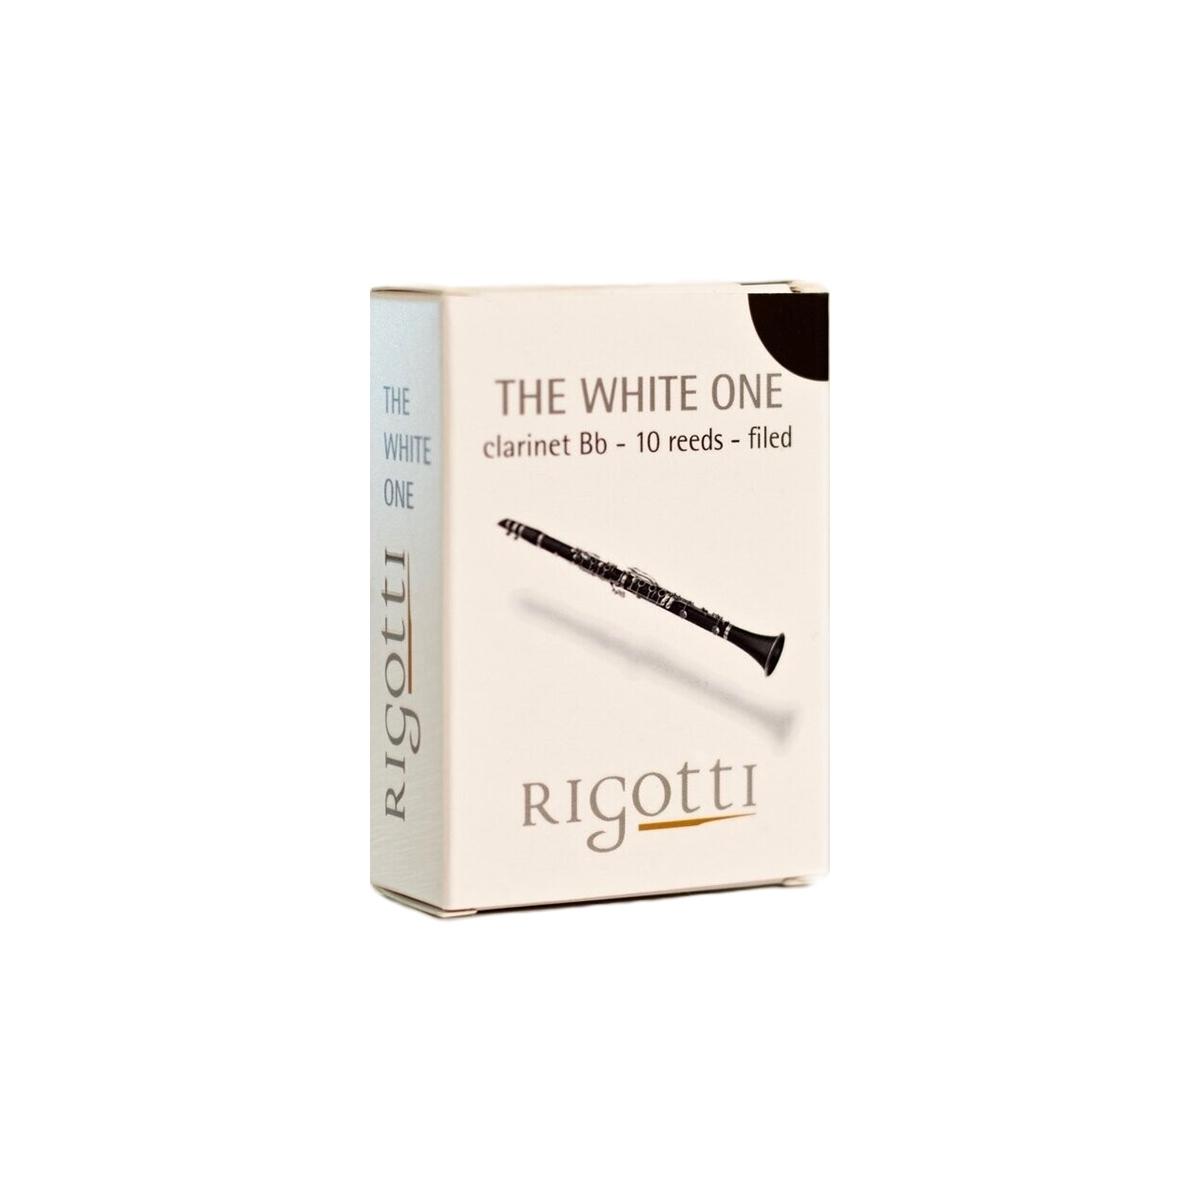 Rigotti The White One ancia clarinetto sib 3